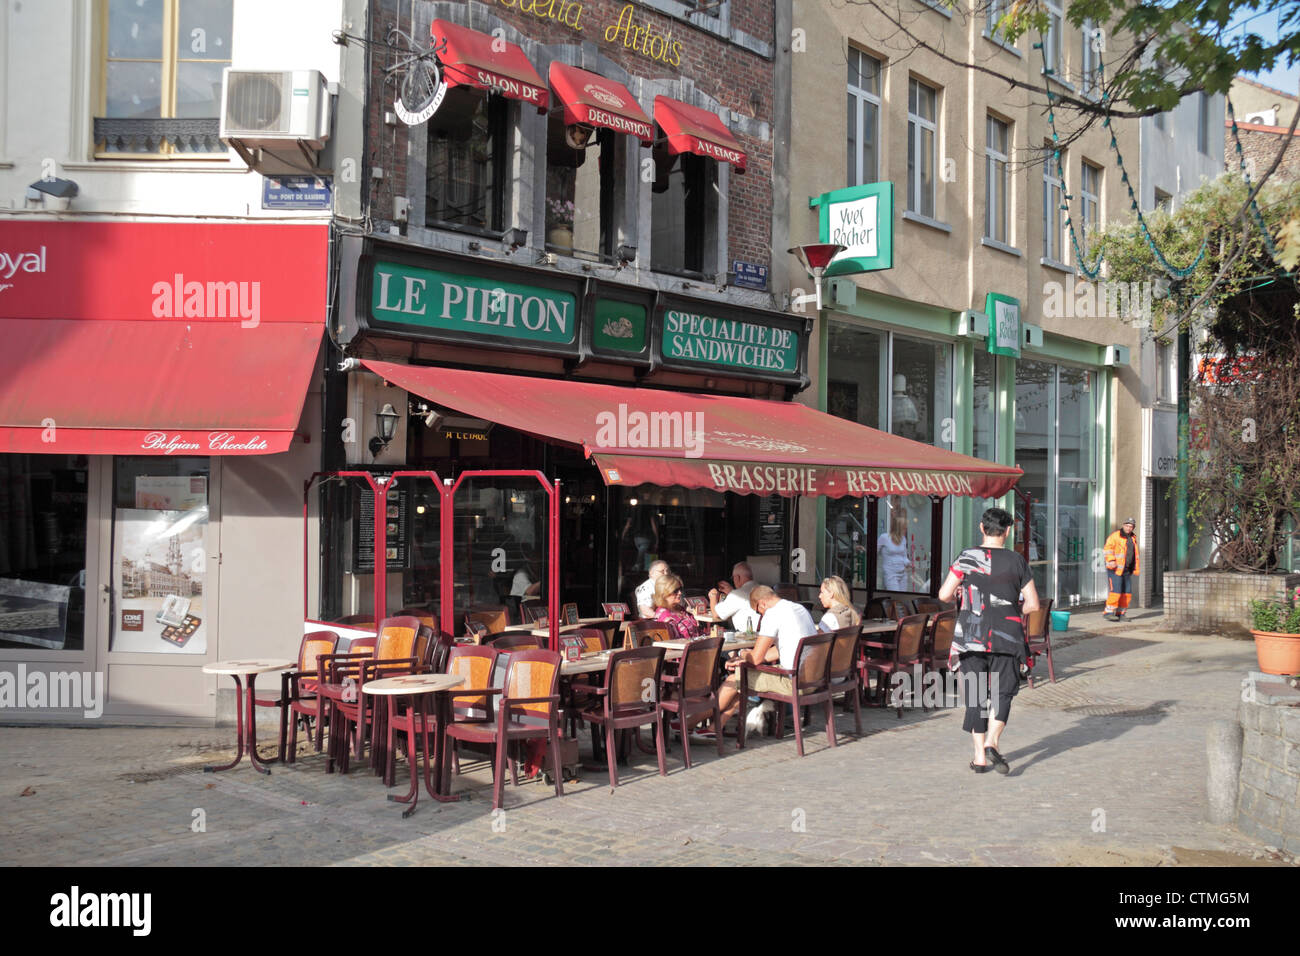 American Diner Essen außerhalb des Restaurants Le Pieton in Charleroi, Wallonien, Hennegau, Belgien. Stockfoto